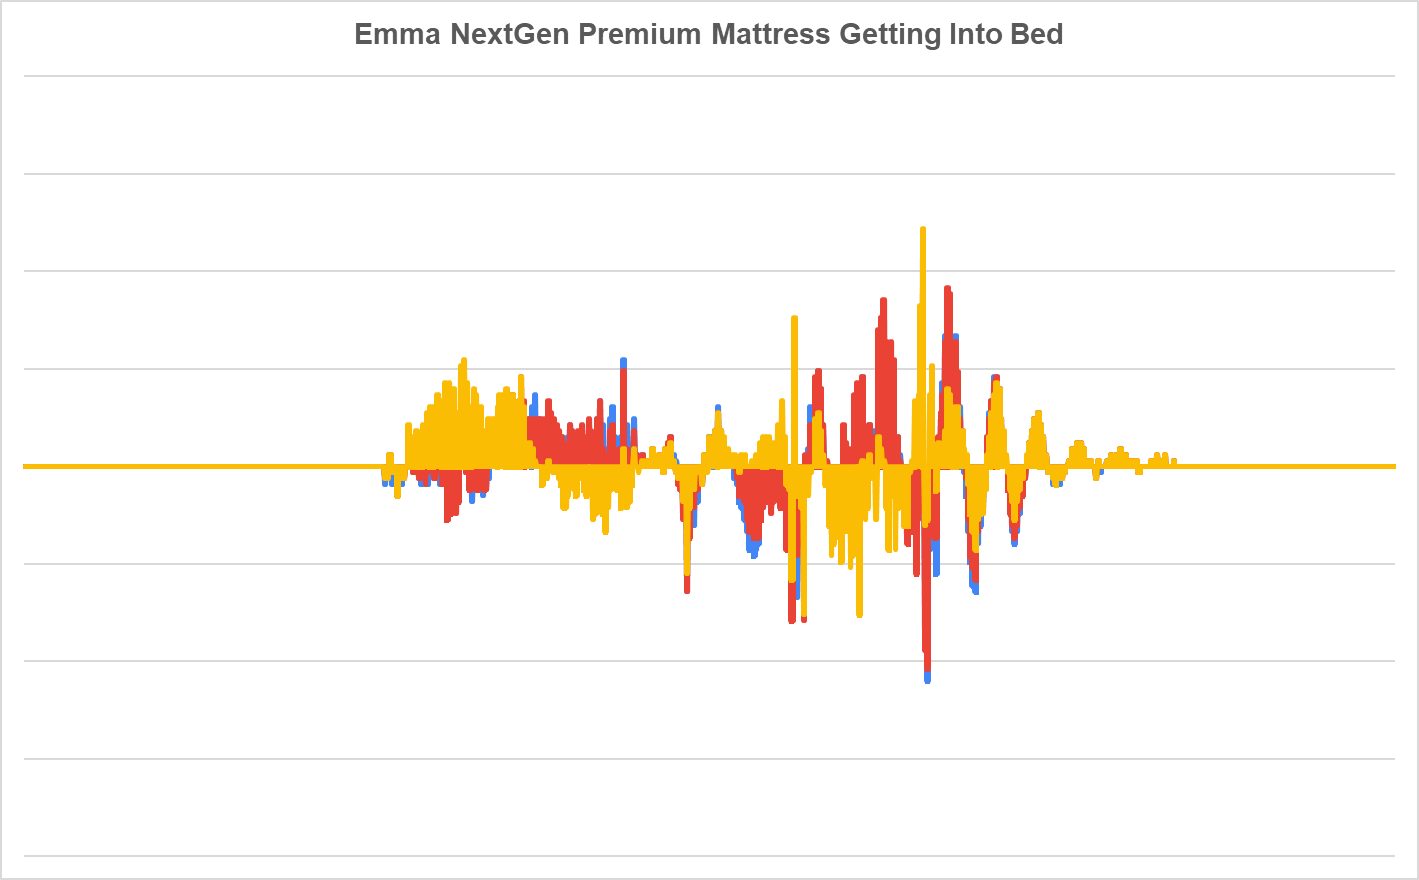 Matelas Emma NextGen Premium pour se mettre au lit